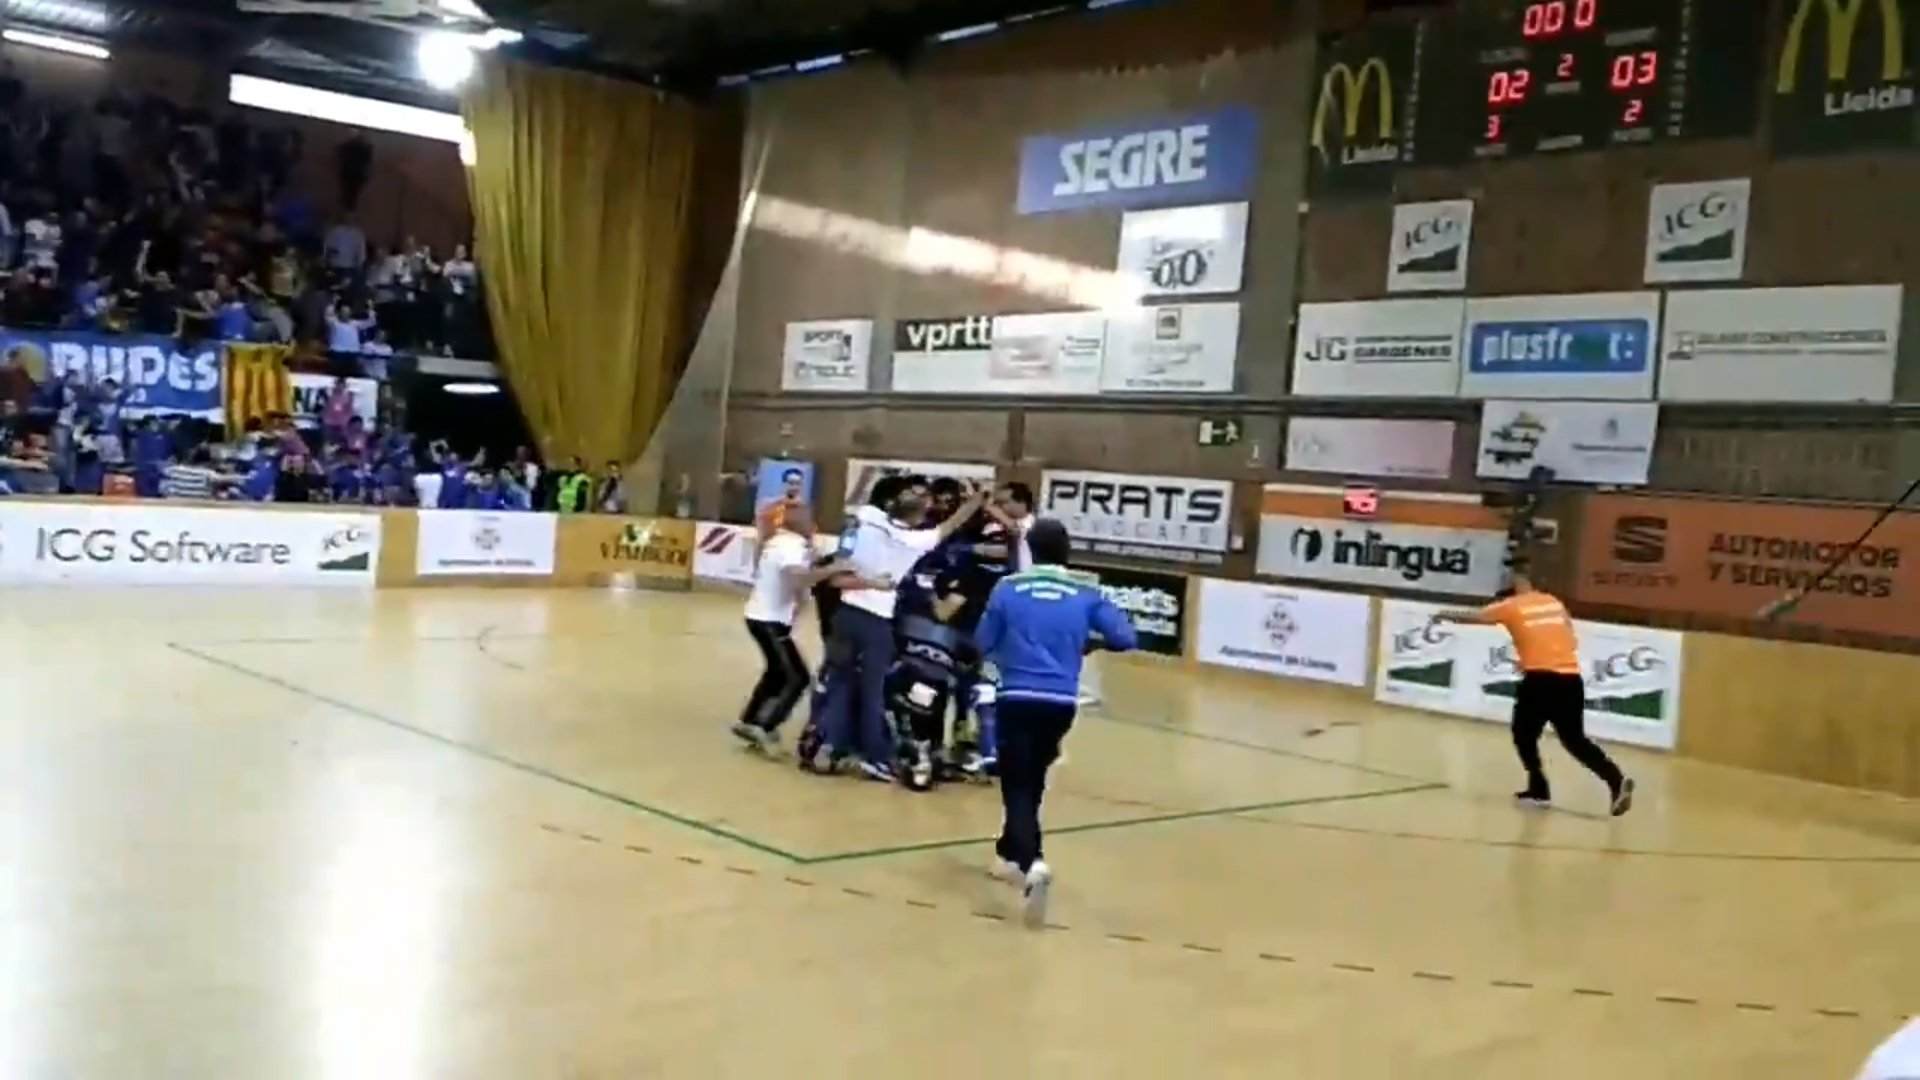 El Lleida de hockey patines se proclama campeón de la CERS en los penaltis (2-2)